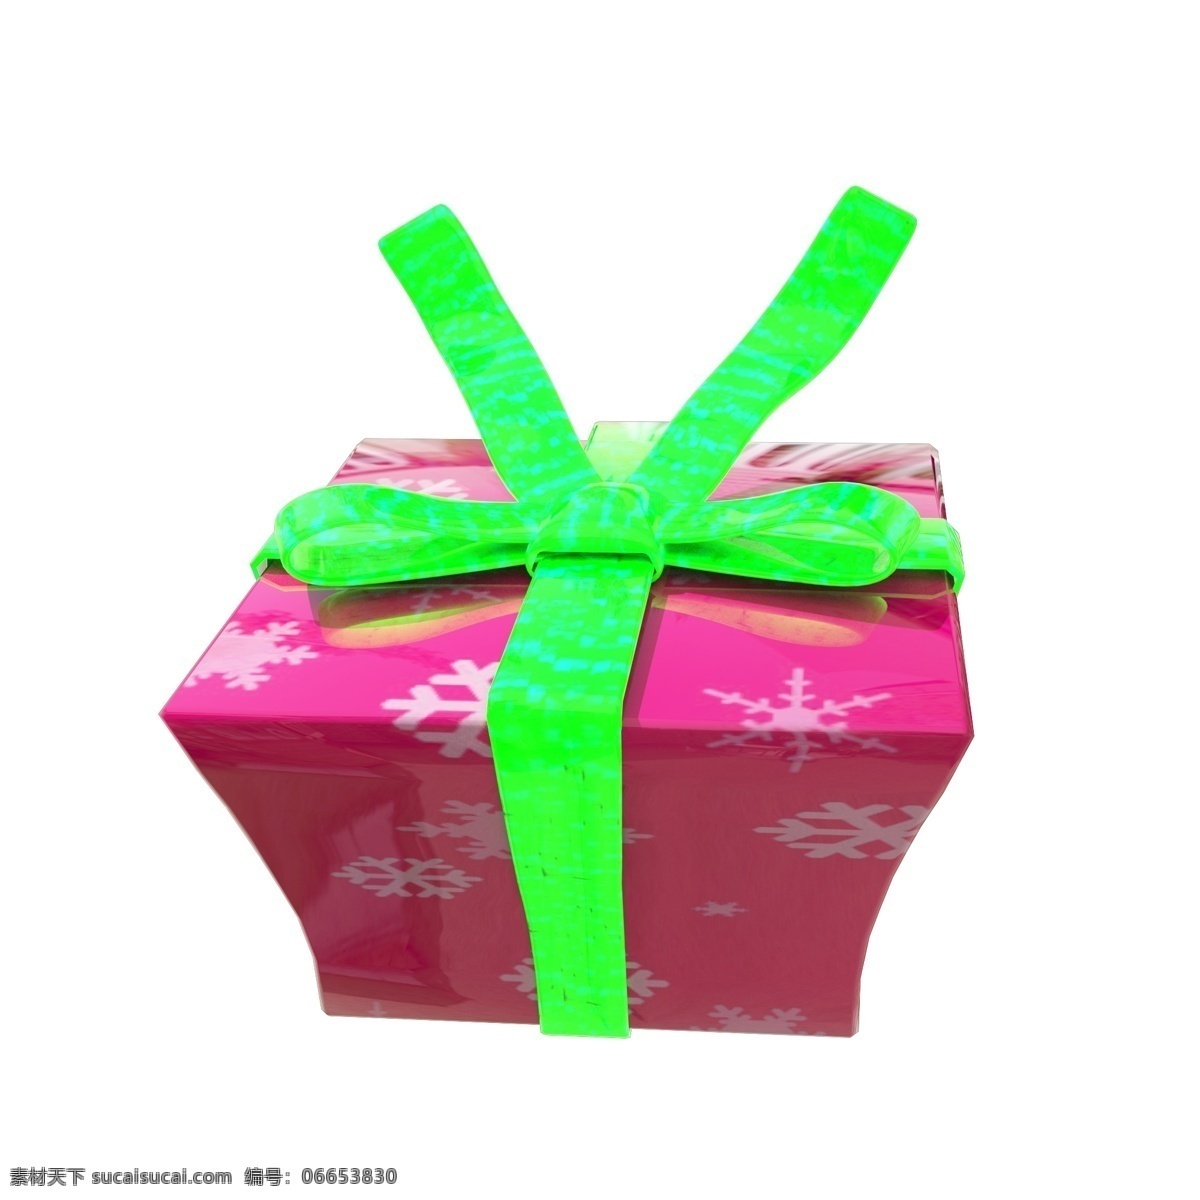 c4d 圣诞节 粉色 礼盒 粉色礼盒 圣诞节礼盒 c4d礼盒 绿色 缎带